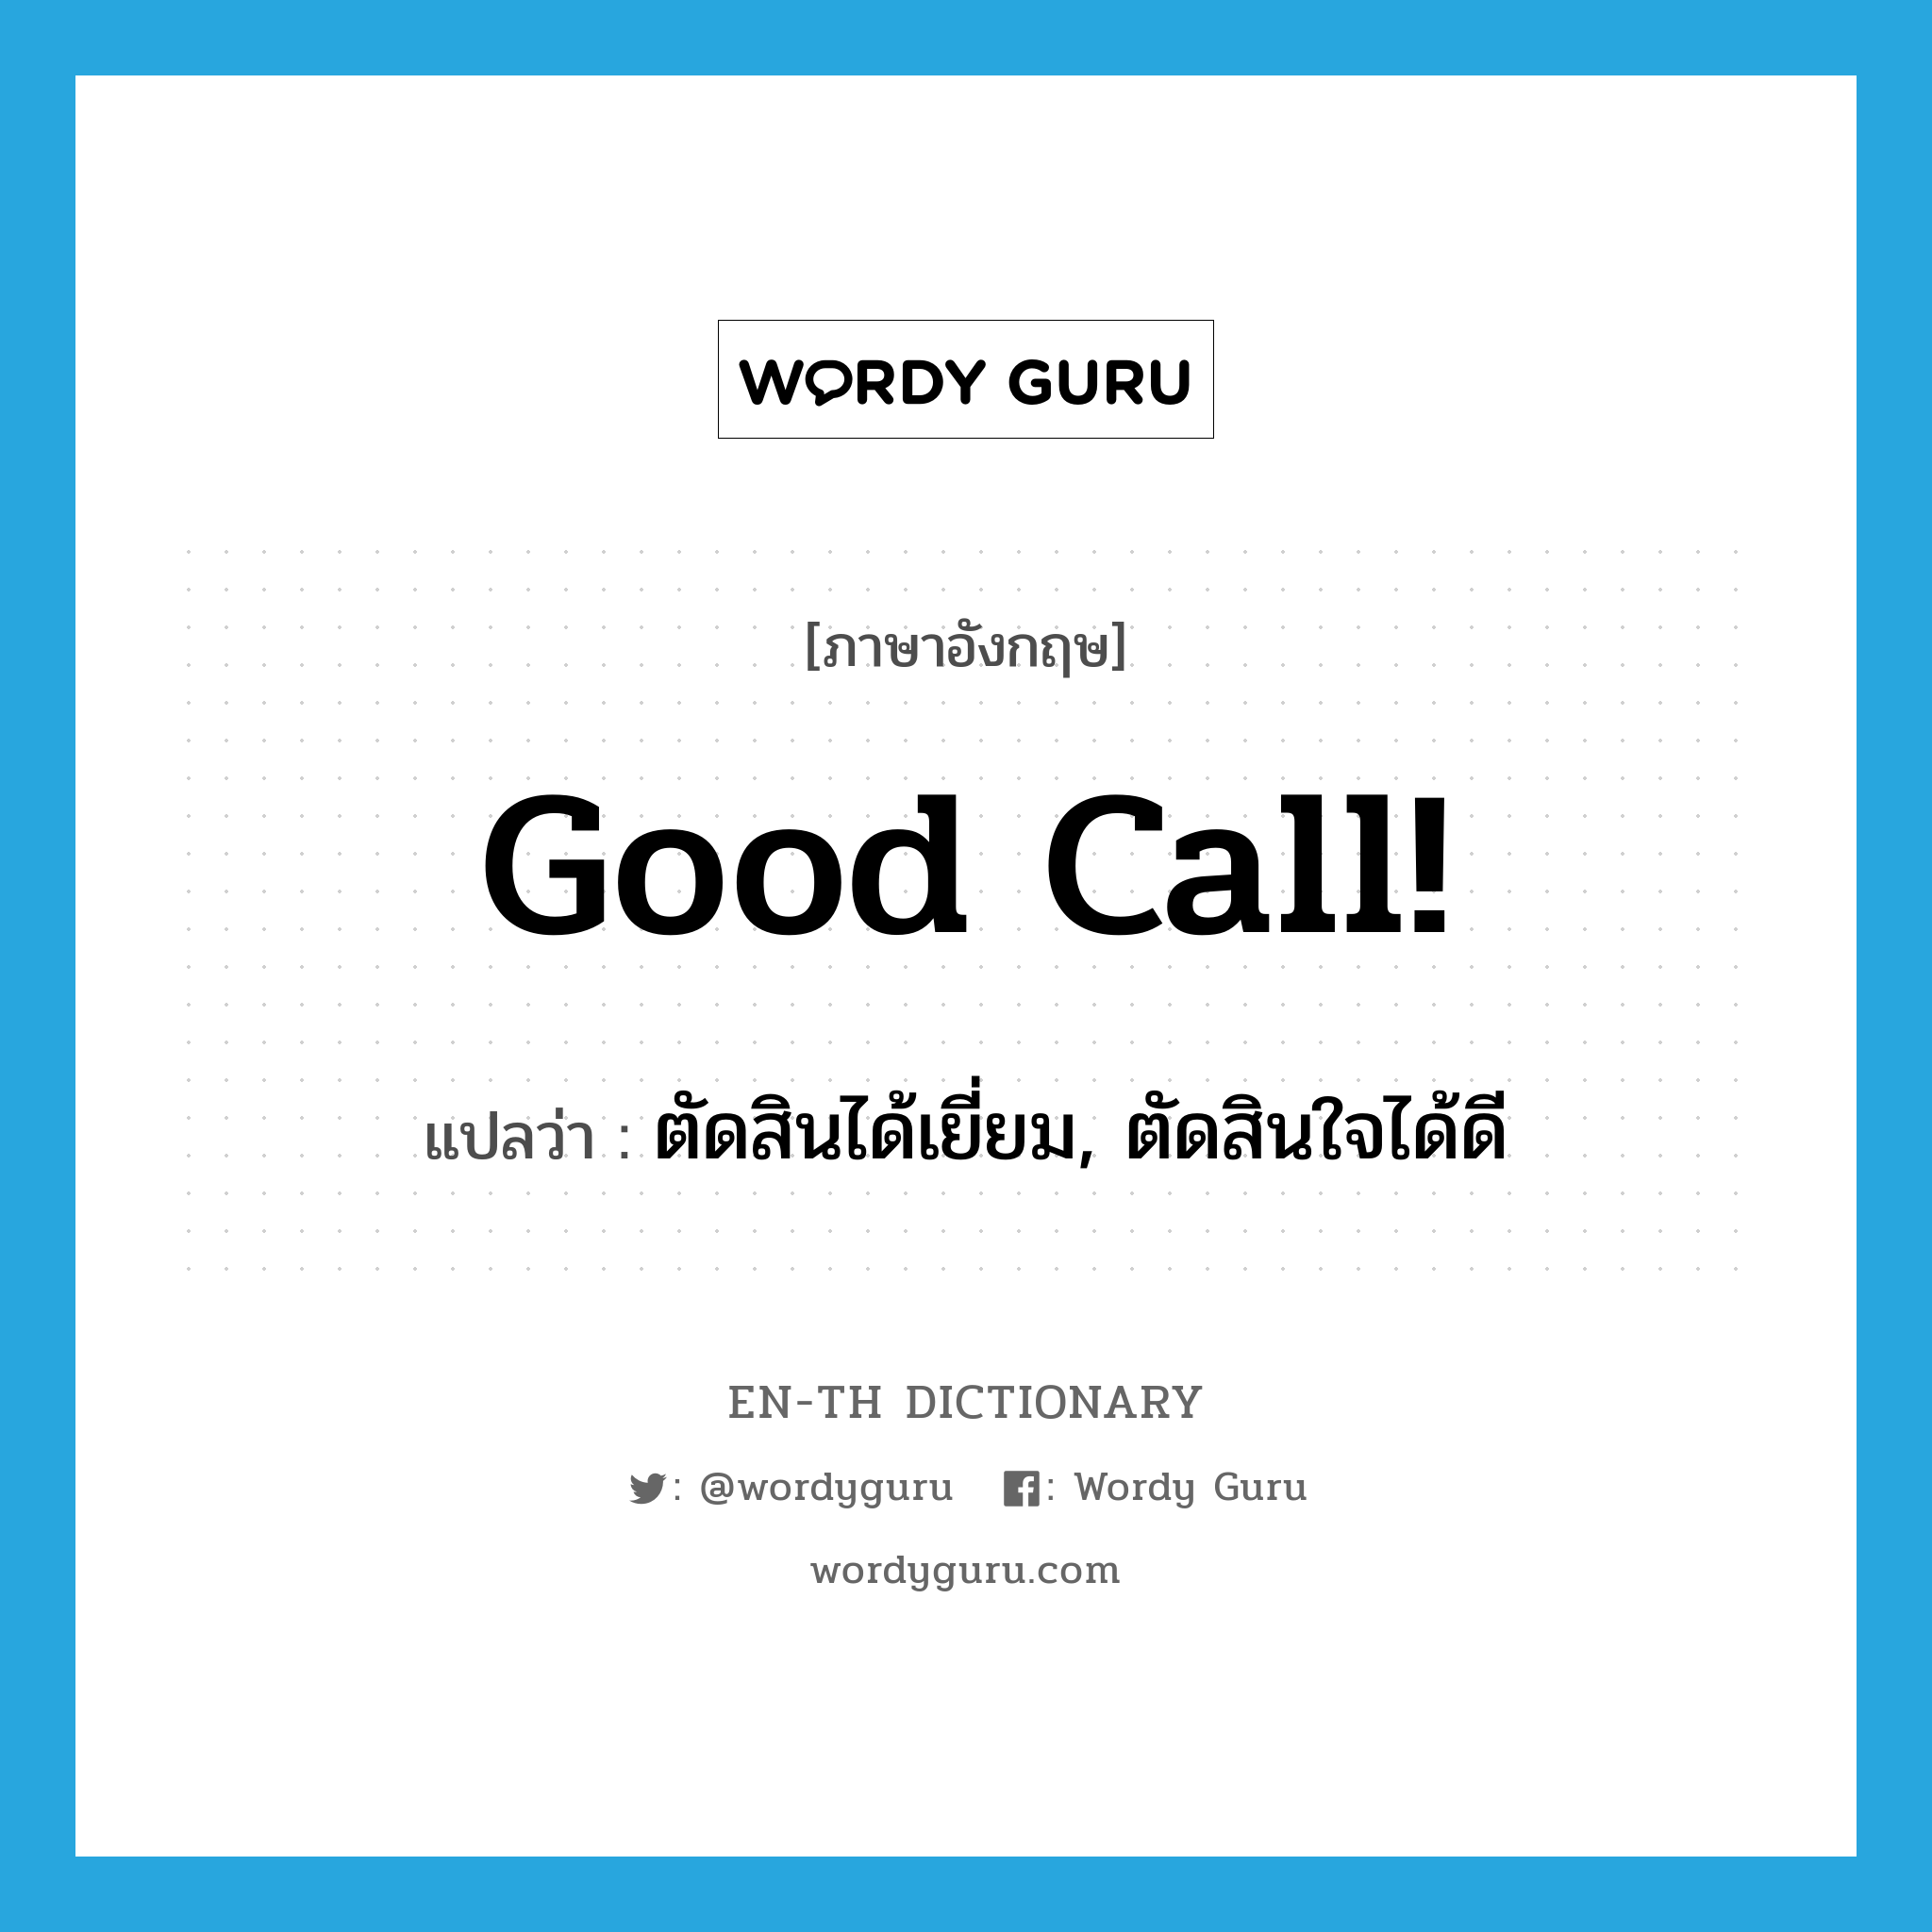 ตัดสินได้เยี่ยม, ตัดสินใจได้ดี ภาษาอังกฤษ?, คำศัพท์ภาษาอังกฤษ ตัดสินได้เยี่ยม, ตัดสินใจได้ดี แปลว่า Good call! ประเภท SL หมวด SL